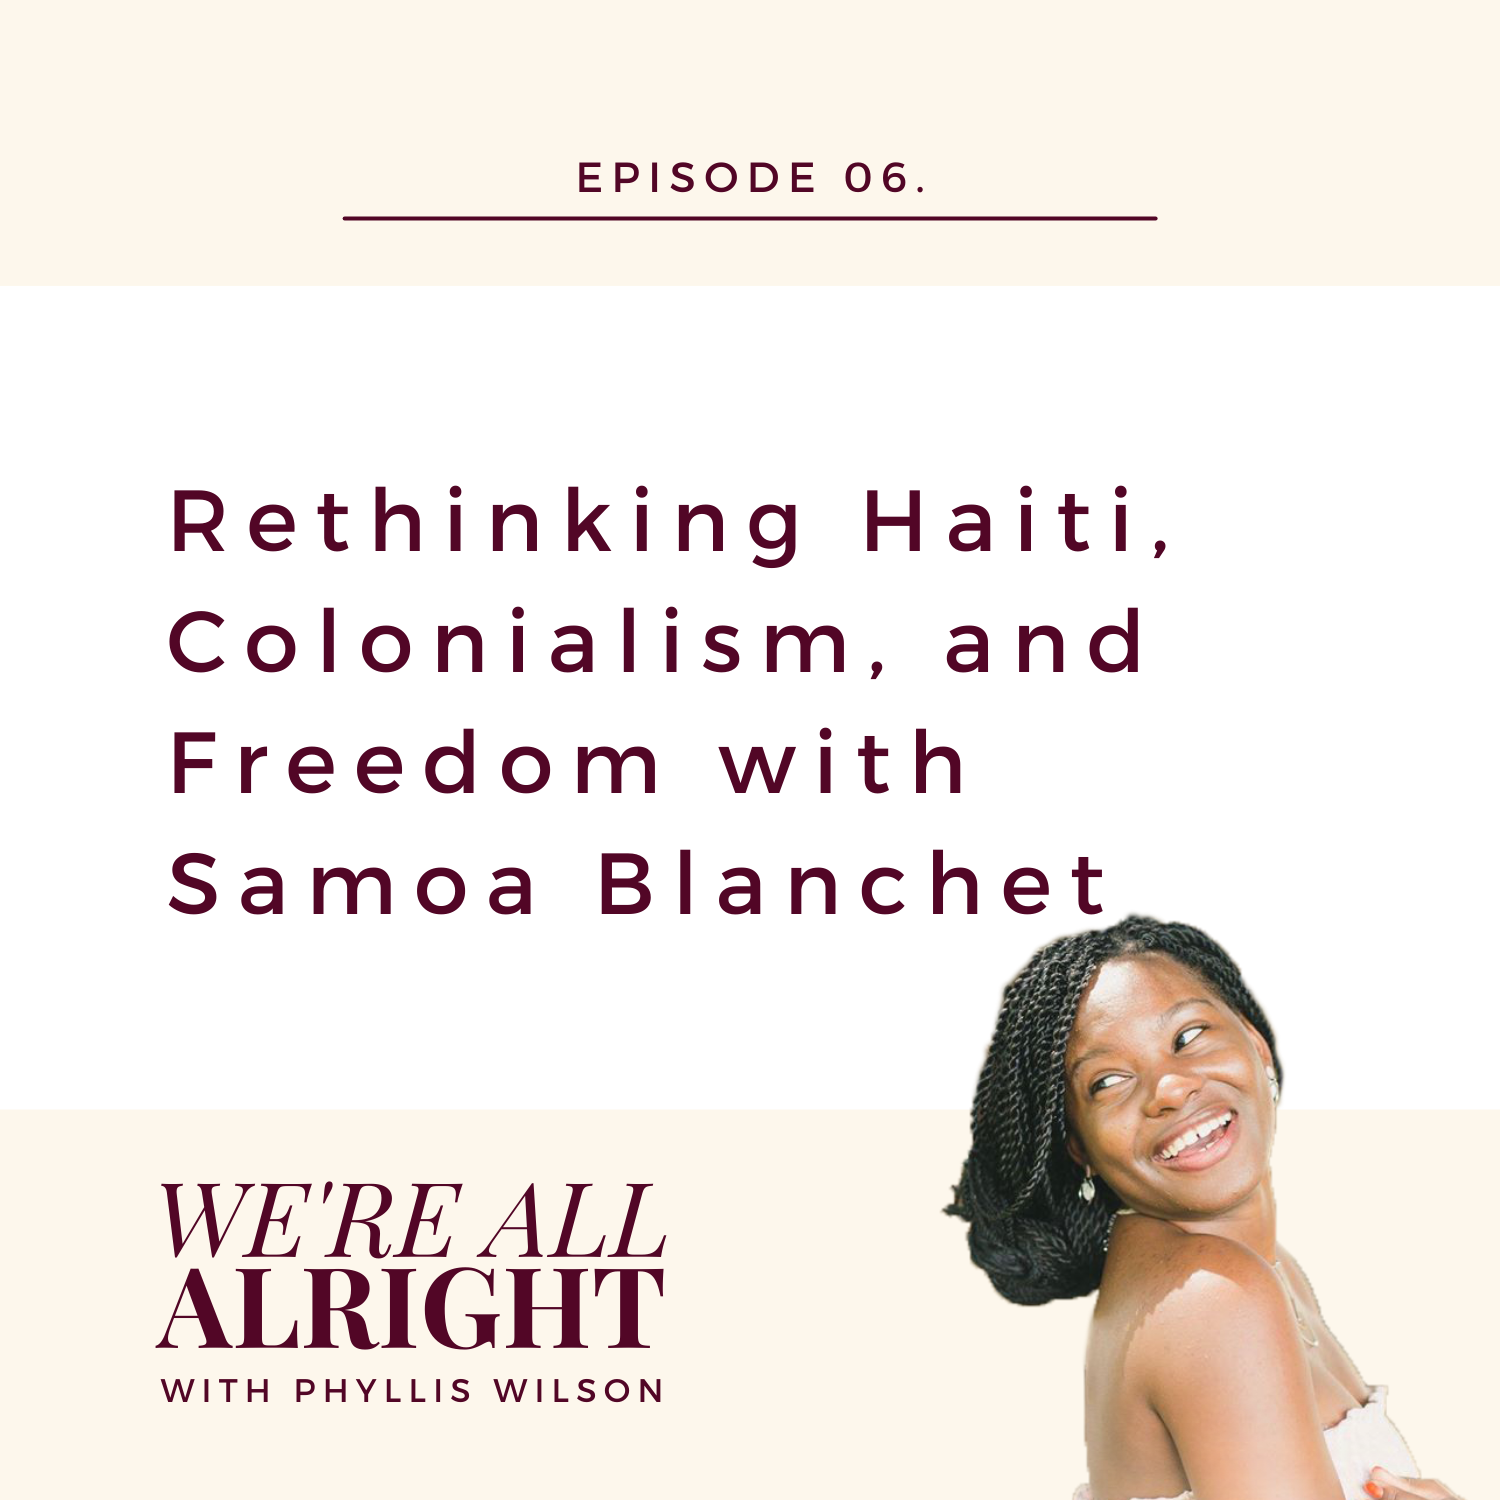 EP 06: Rethinking Haiti, Colonialism, and Freedom with Samoa Blanchet